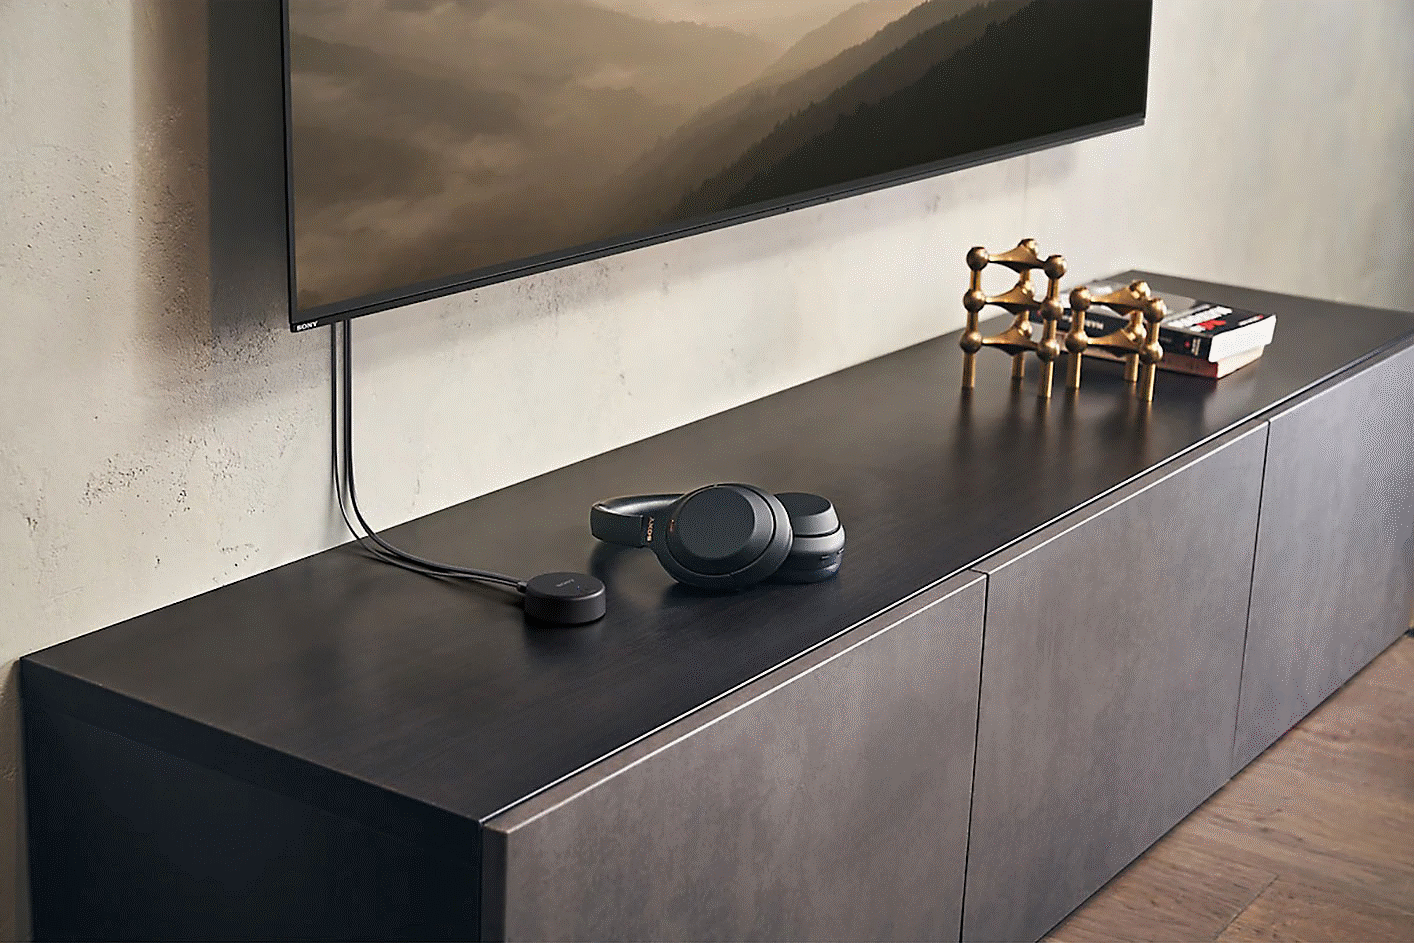 Imagen de unos audífonos negros WH-CH720 de Sony colocados en un mueble debajo de un televisor